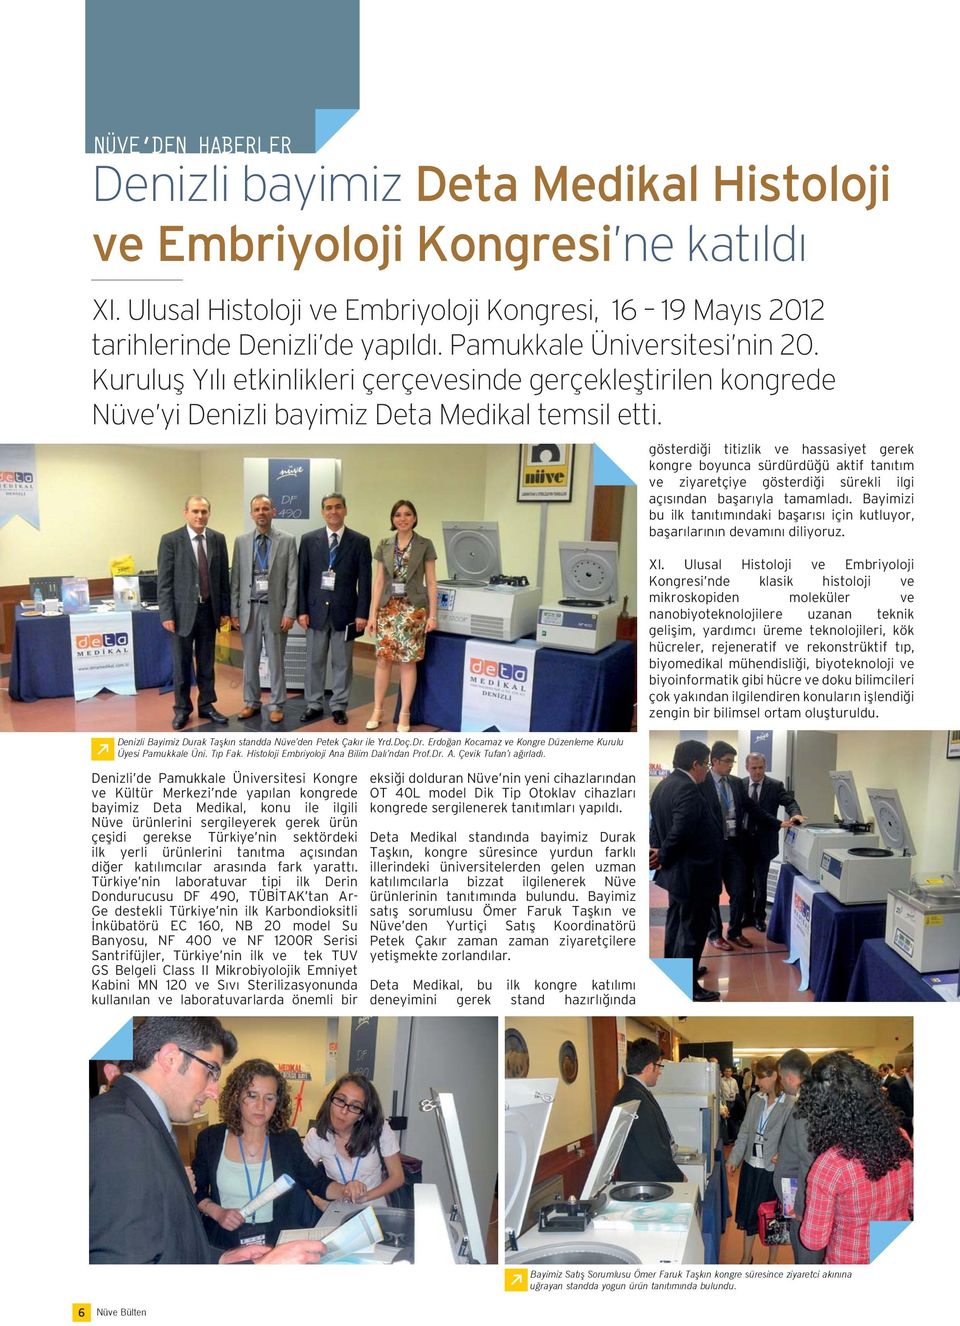 Denizli de Pamukkale Üniversitesi Kongre ve Kültür Merkezi nde yapılan kongrede bayimiz Deta Medikal, konu ile ilgili Nüve ürünlerini sergileyerek gerek ürün çeşidi gerekse Türkiye nin sektördeki ilk